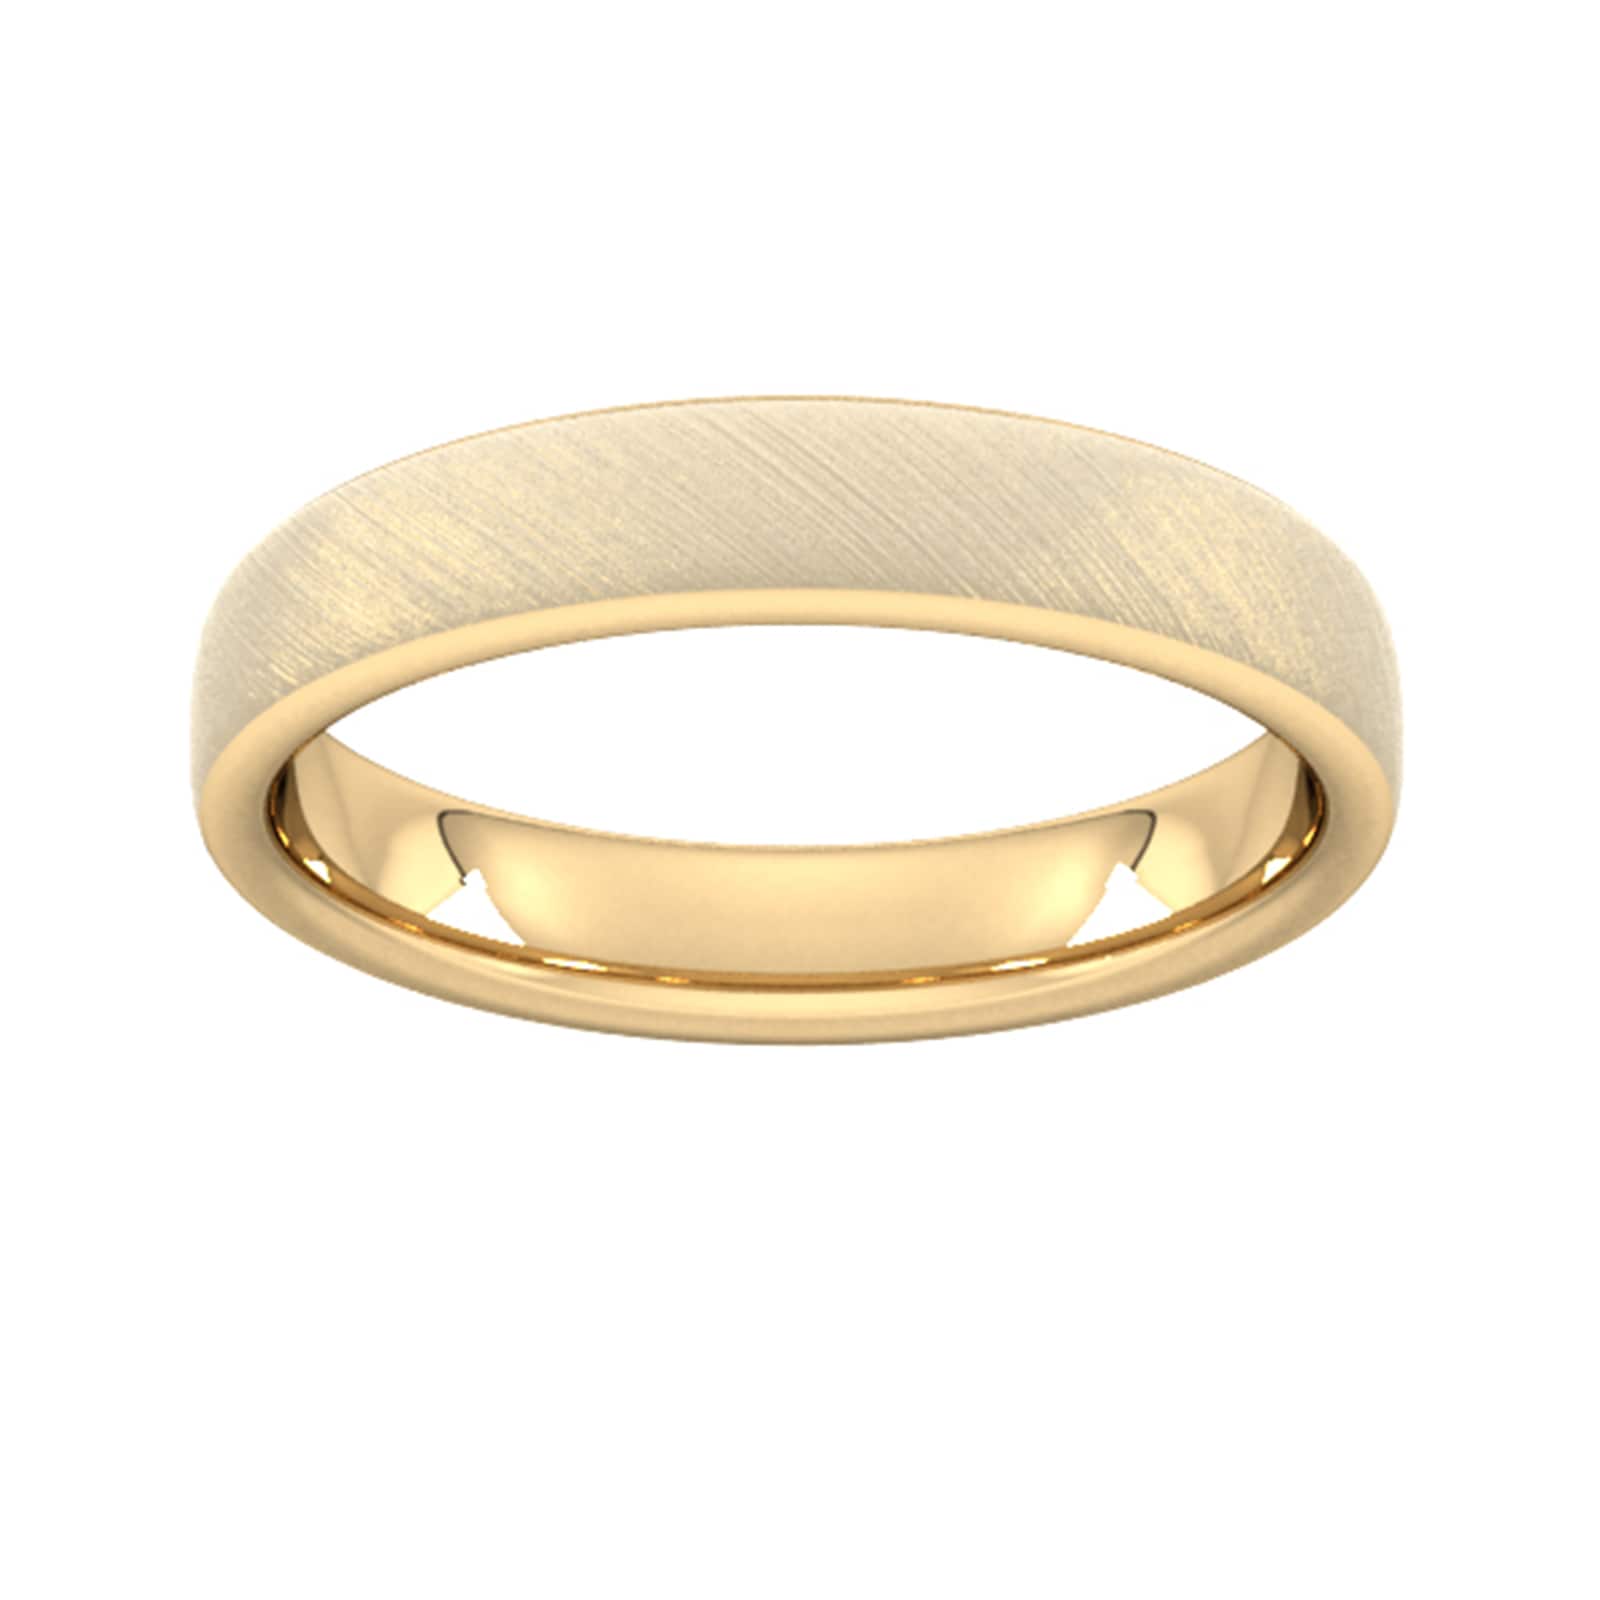 4mm Slight Court Heavy Diagonal Matt Finish Wedding Ring In 18 Carat Yellow Gold - Ring Size X